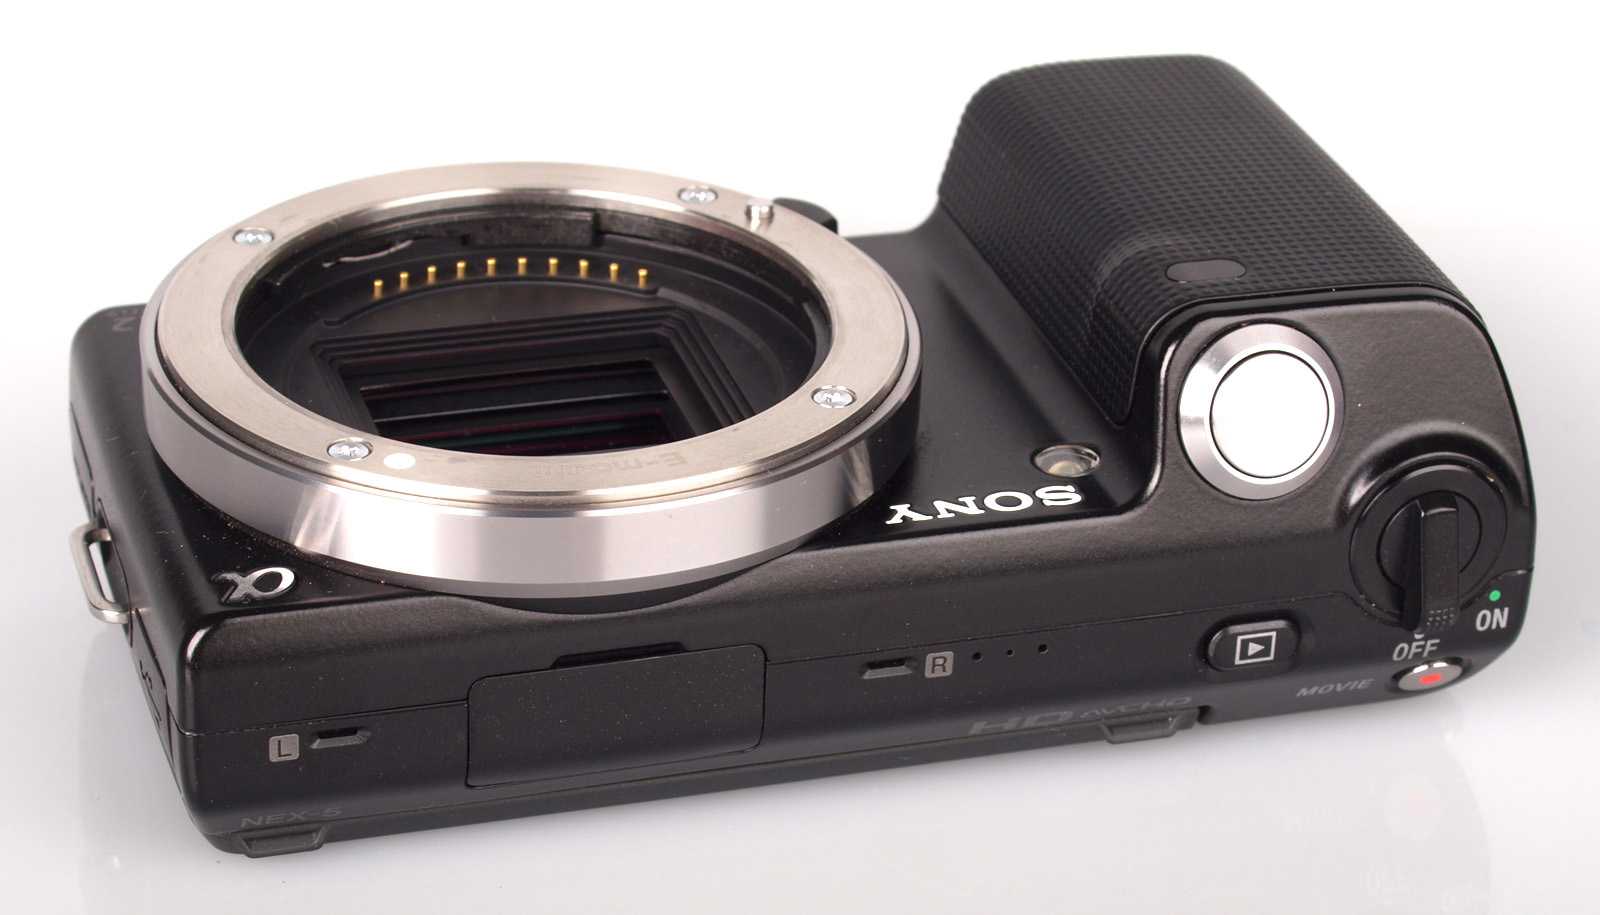 Цифровой фотоаппарат Sony NEX-5T body - подробные характеристики обзоры видео фото Цены в интернет-магазинах где можно купить цифровую фотоаппарат Sony NEX-5T body